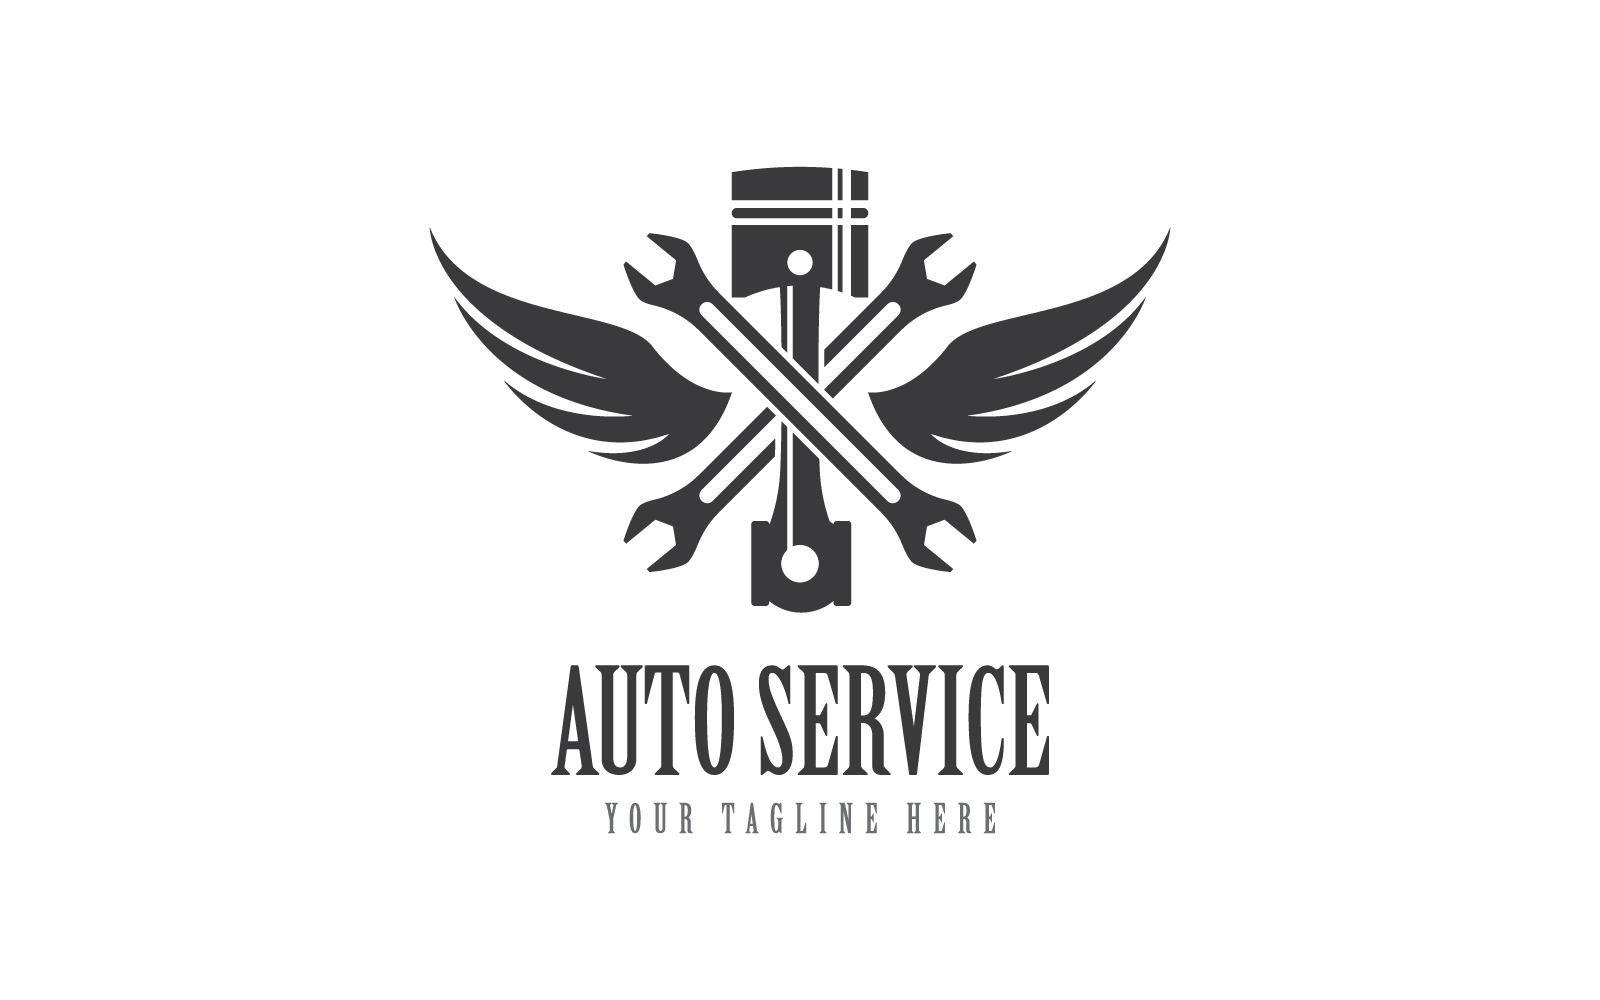 Piston auto service logo vector design Logo Template